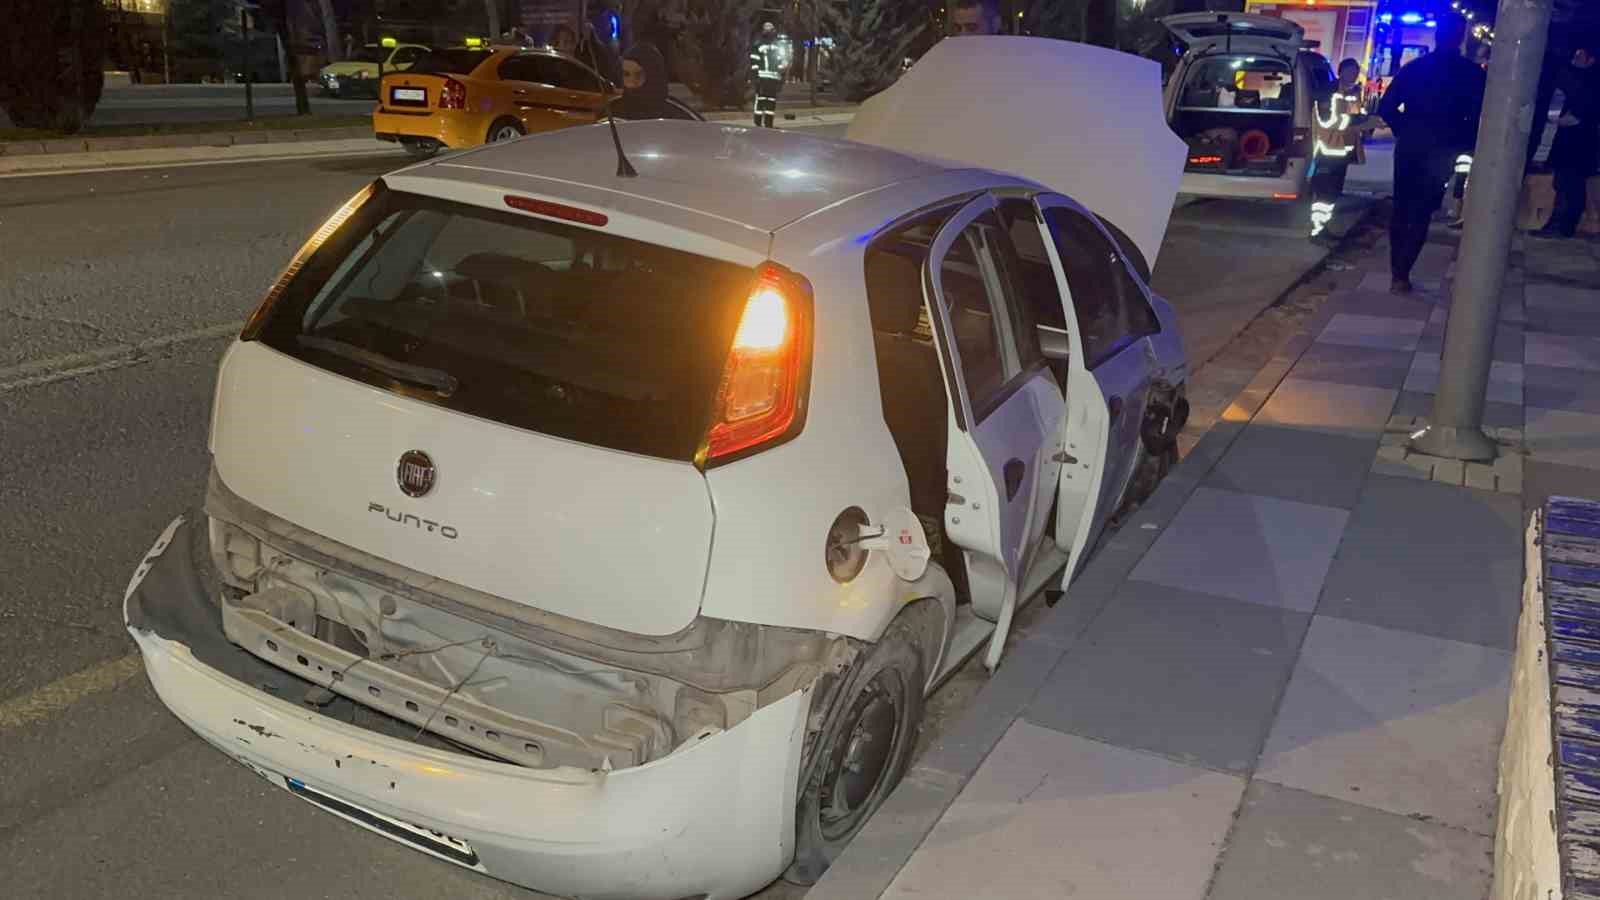 Elazığ’da zincirleme trafik kazası: 2 yaralı
